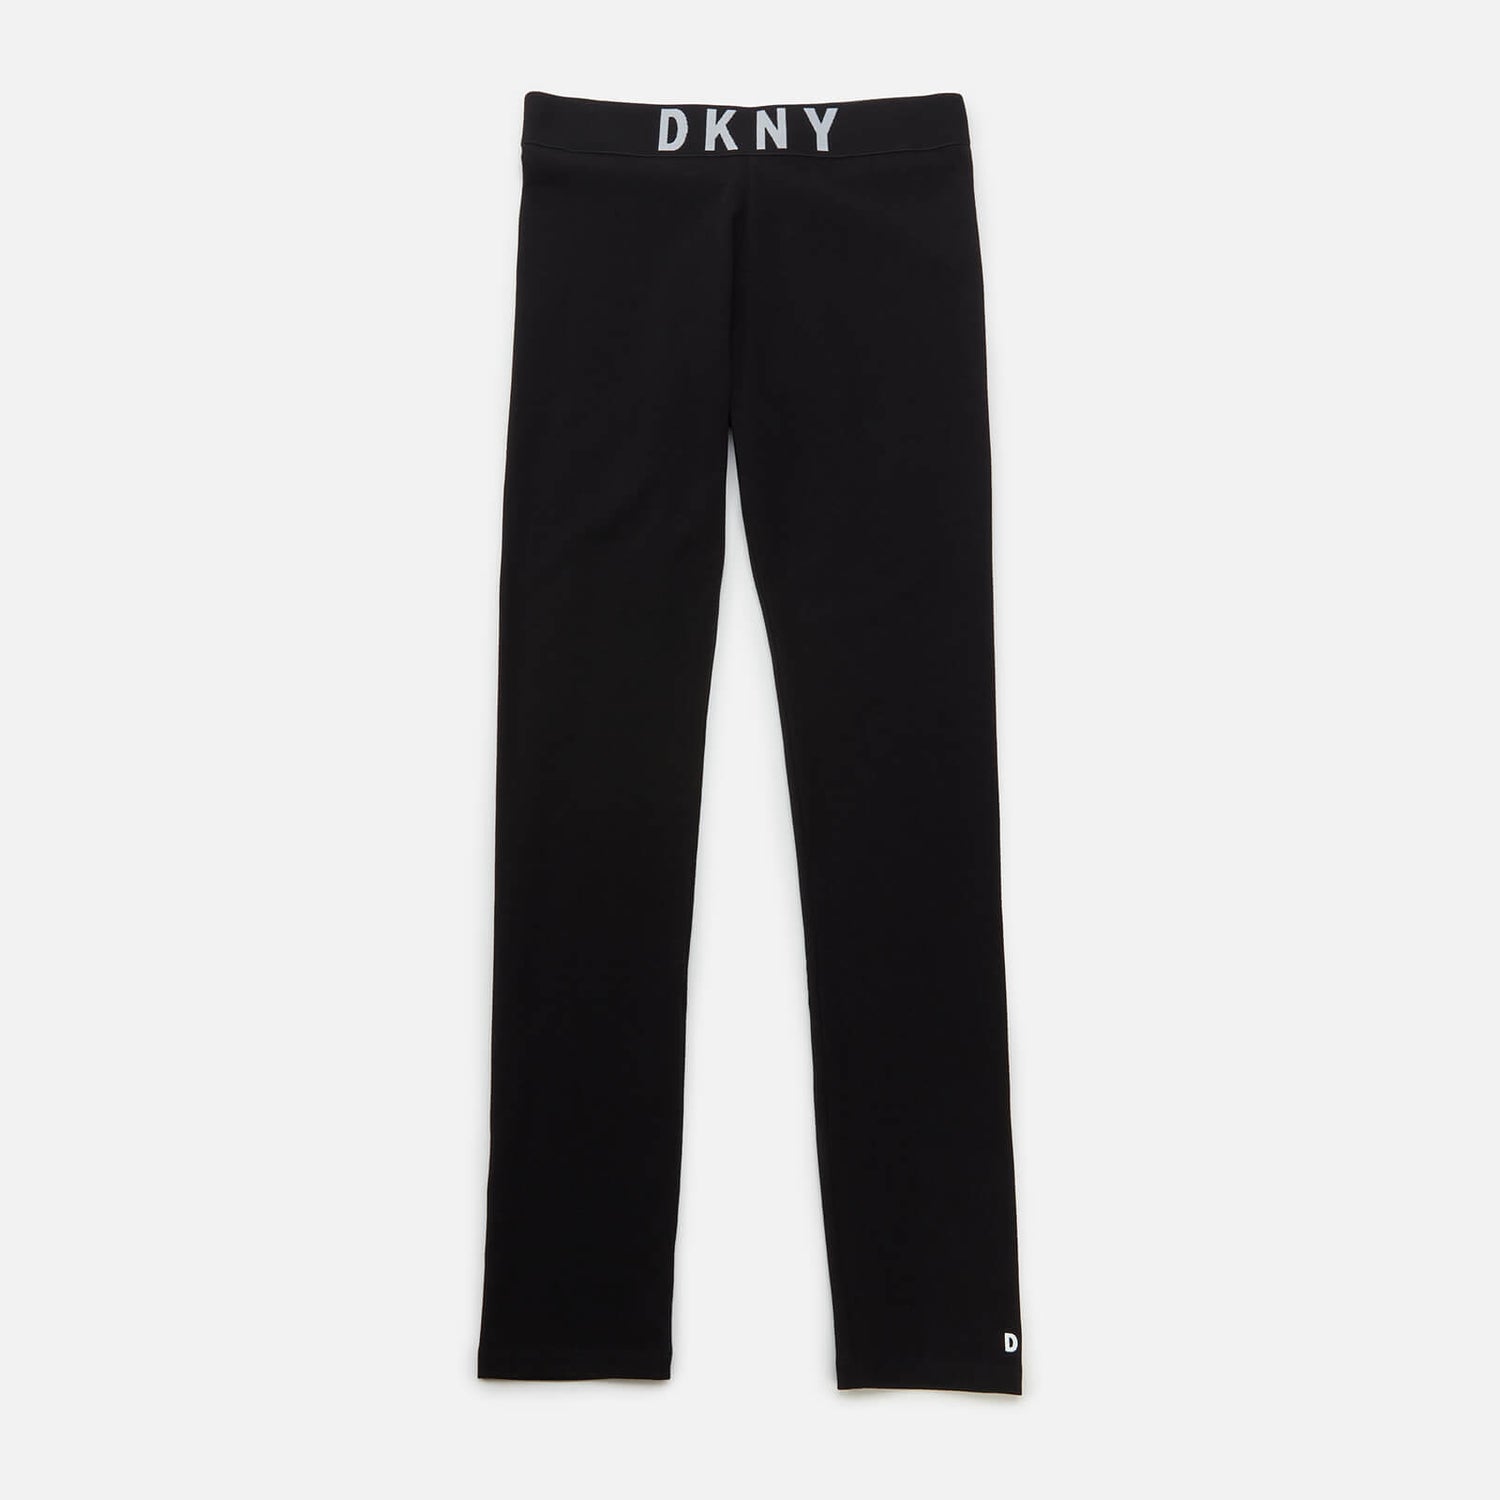 DKNY Girls' Logo Leggings - Black